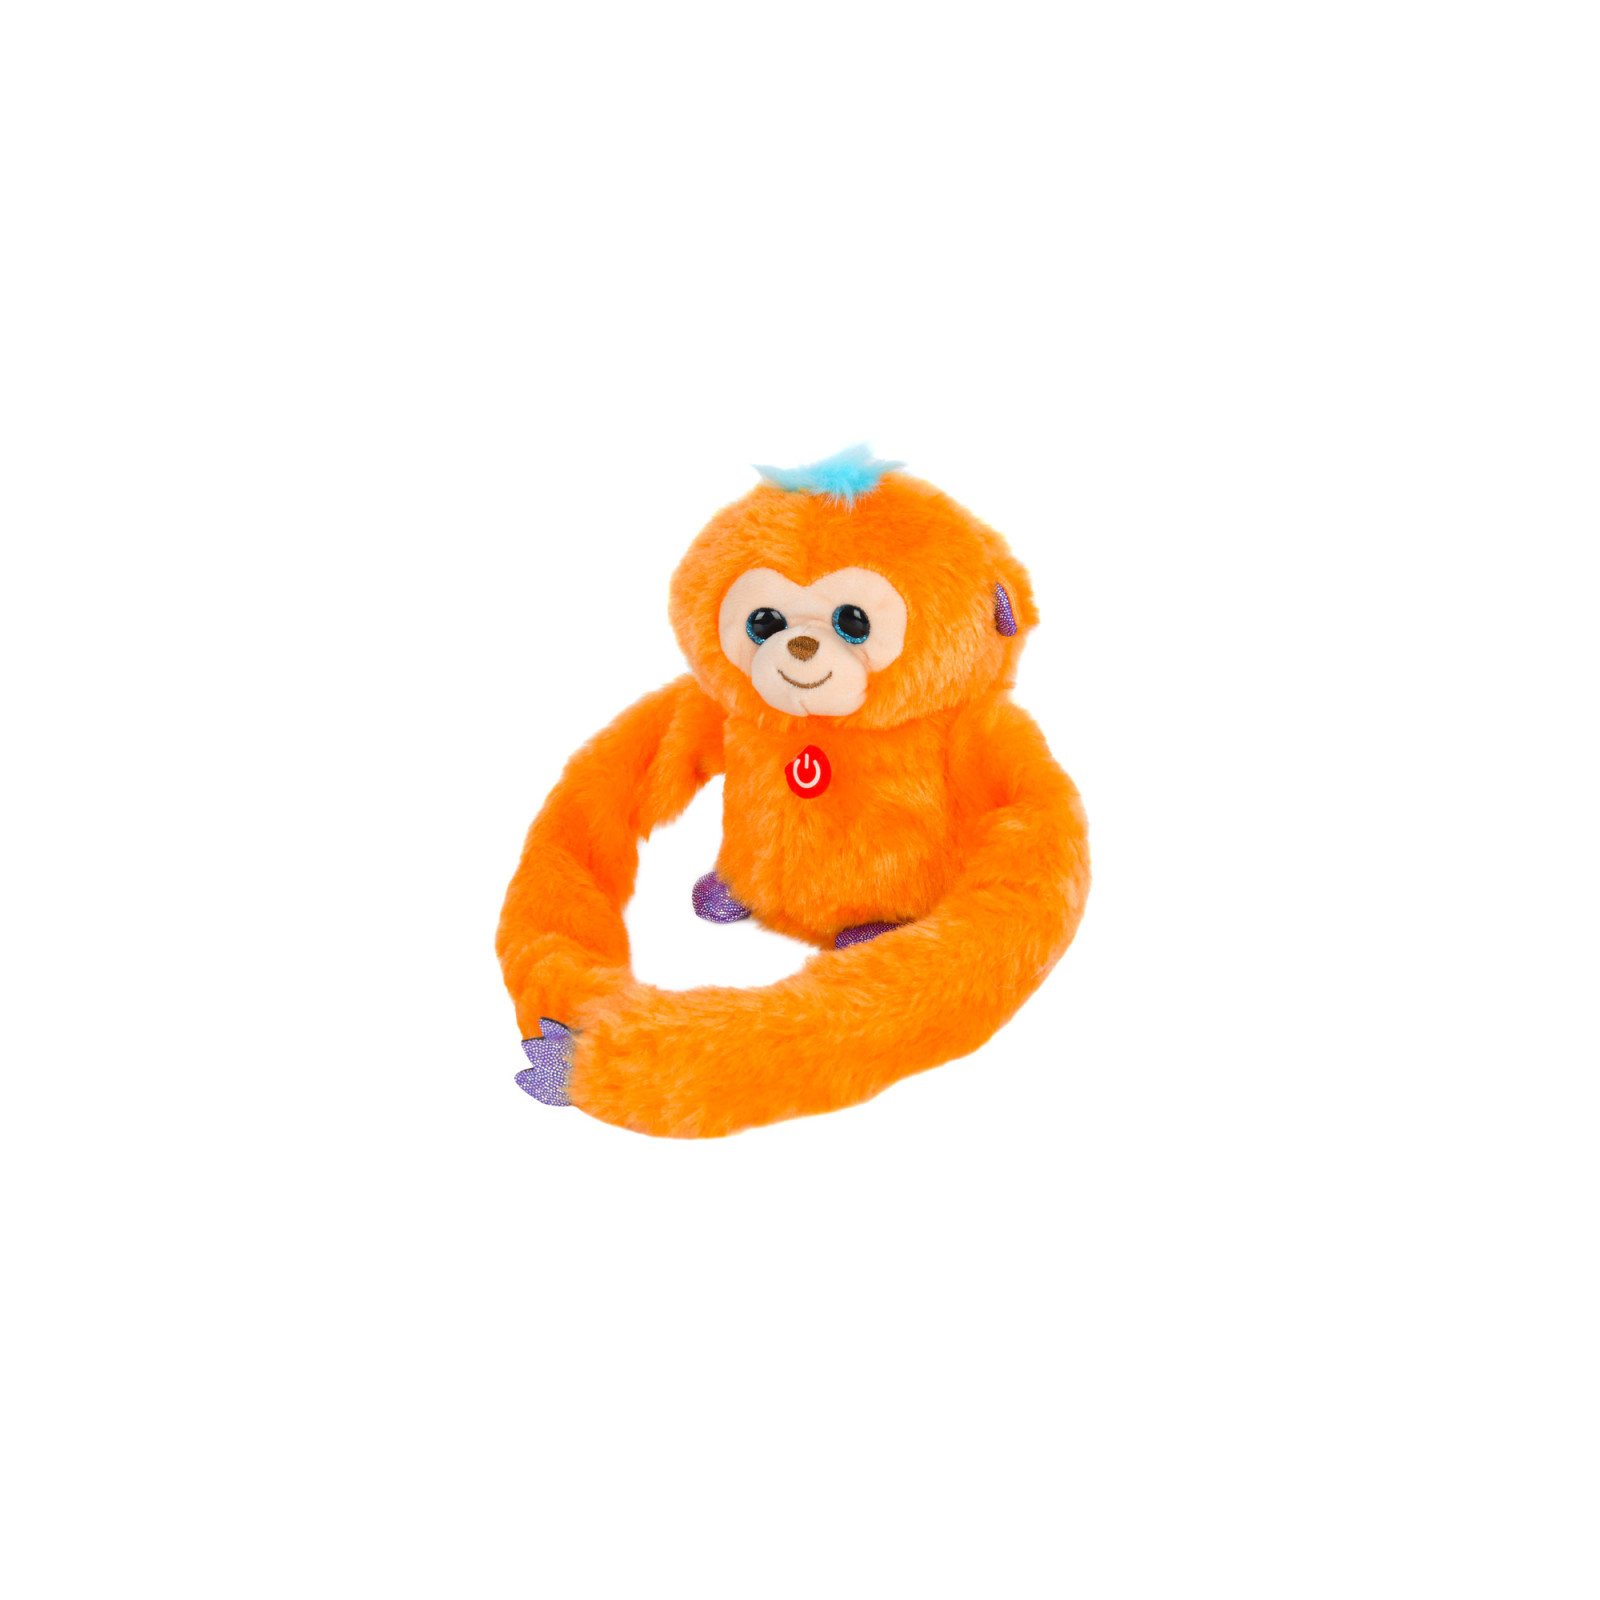 Интерактивная игрушка Bambi Обезьяна Оранжевая (MP 2304 orange)